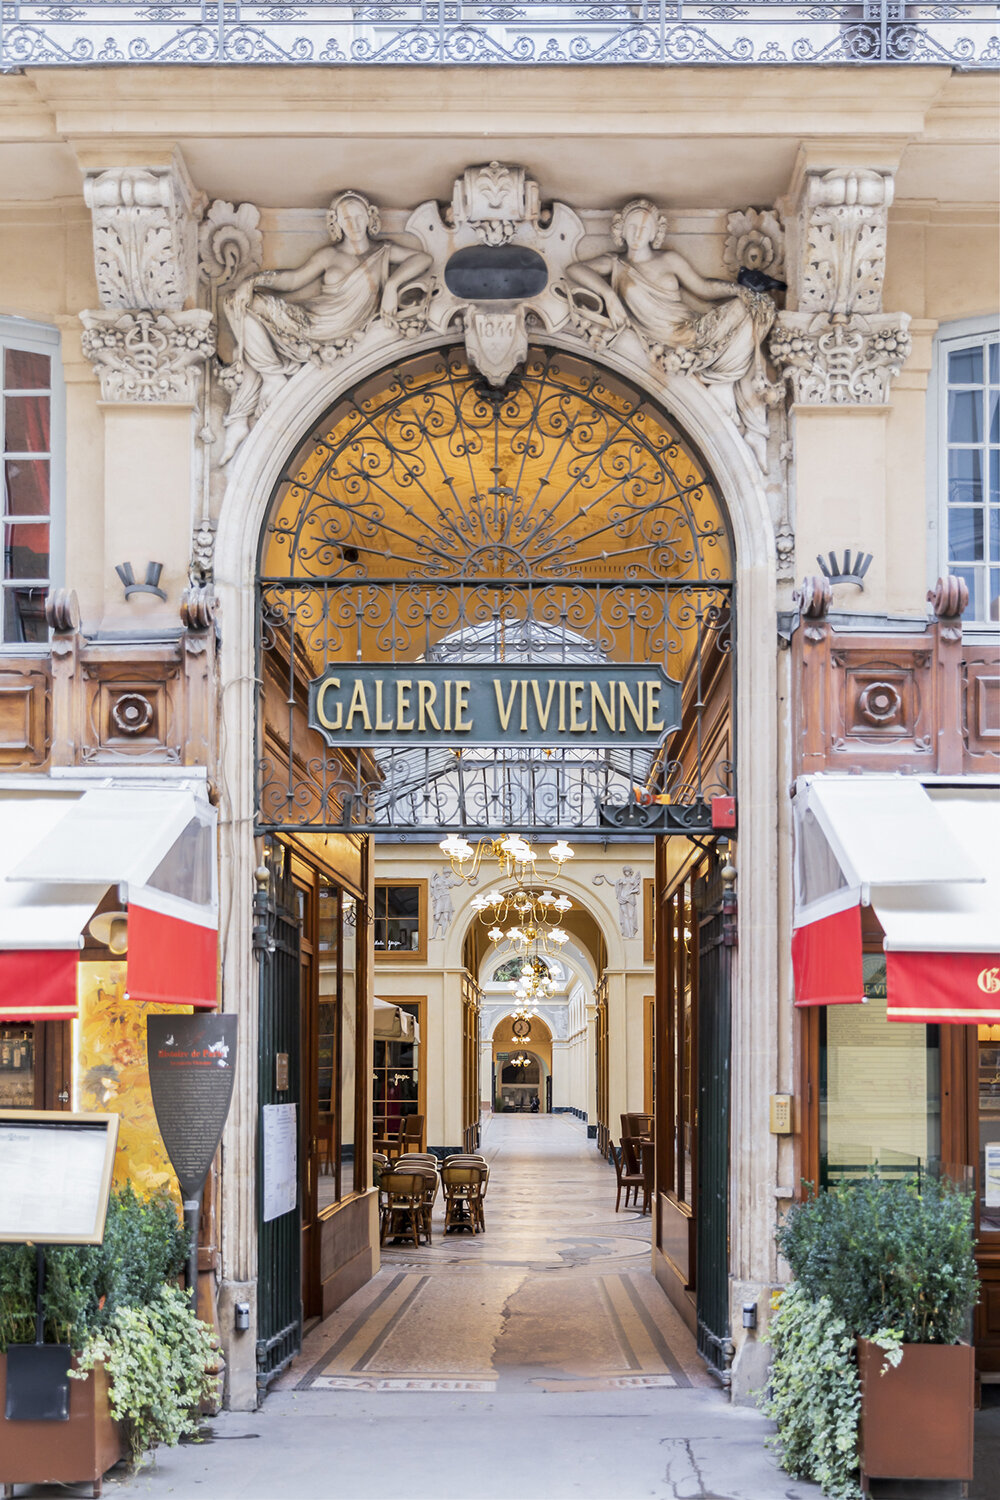 Galerie Vivienne Entrance